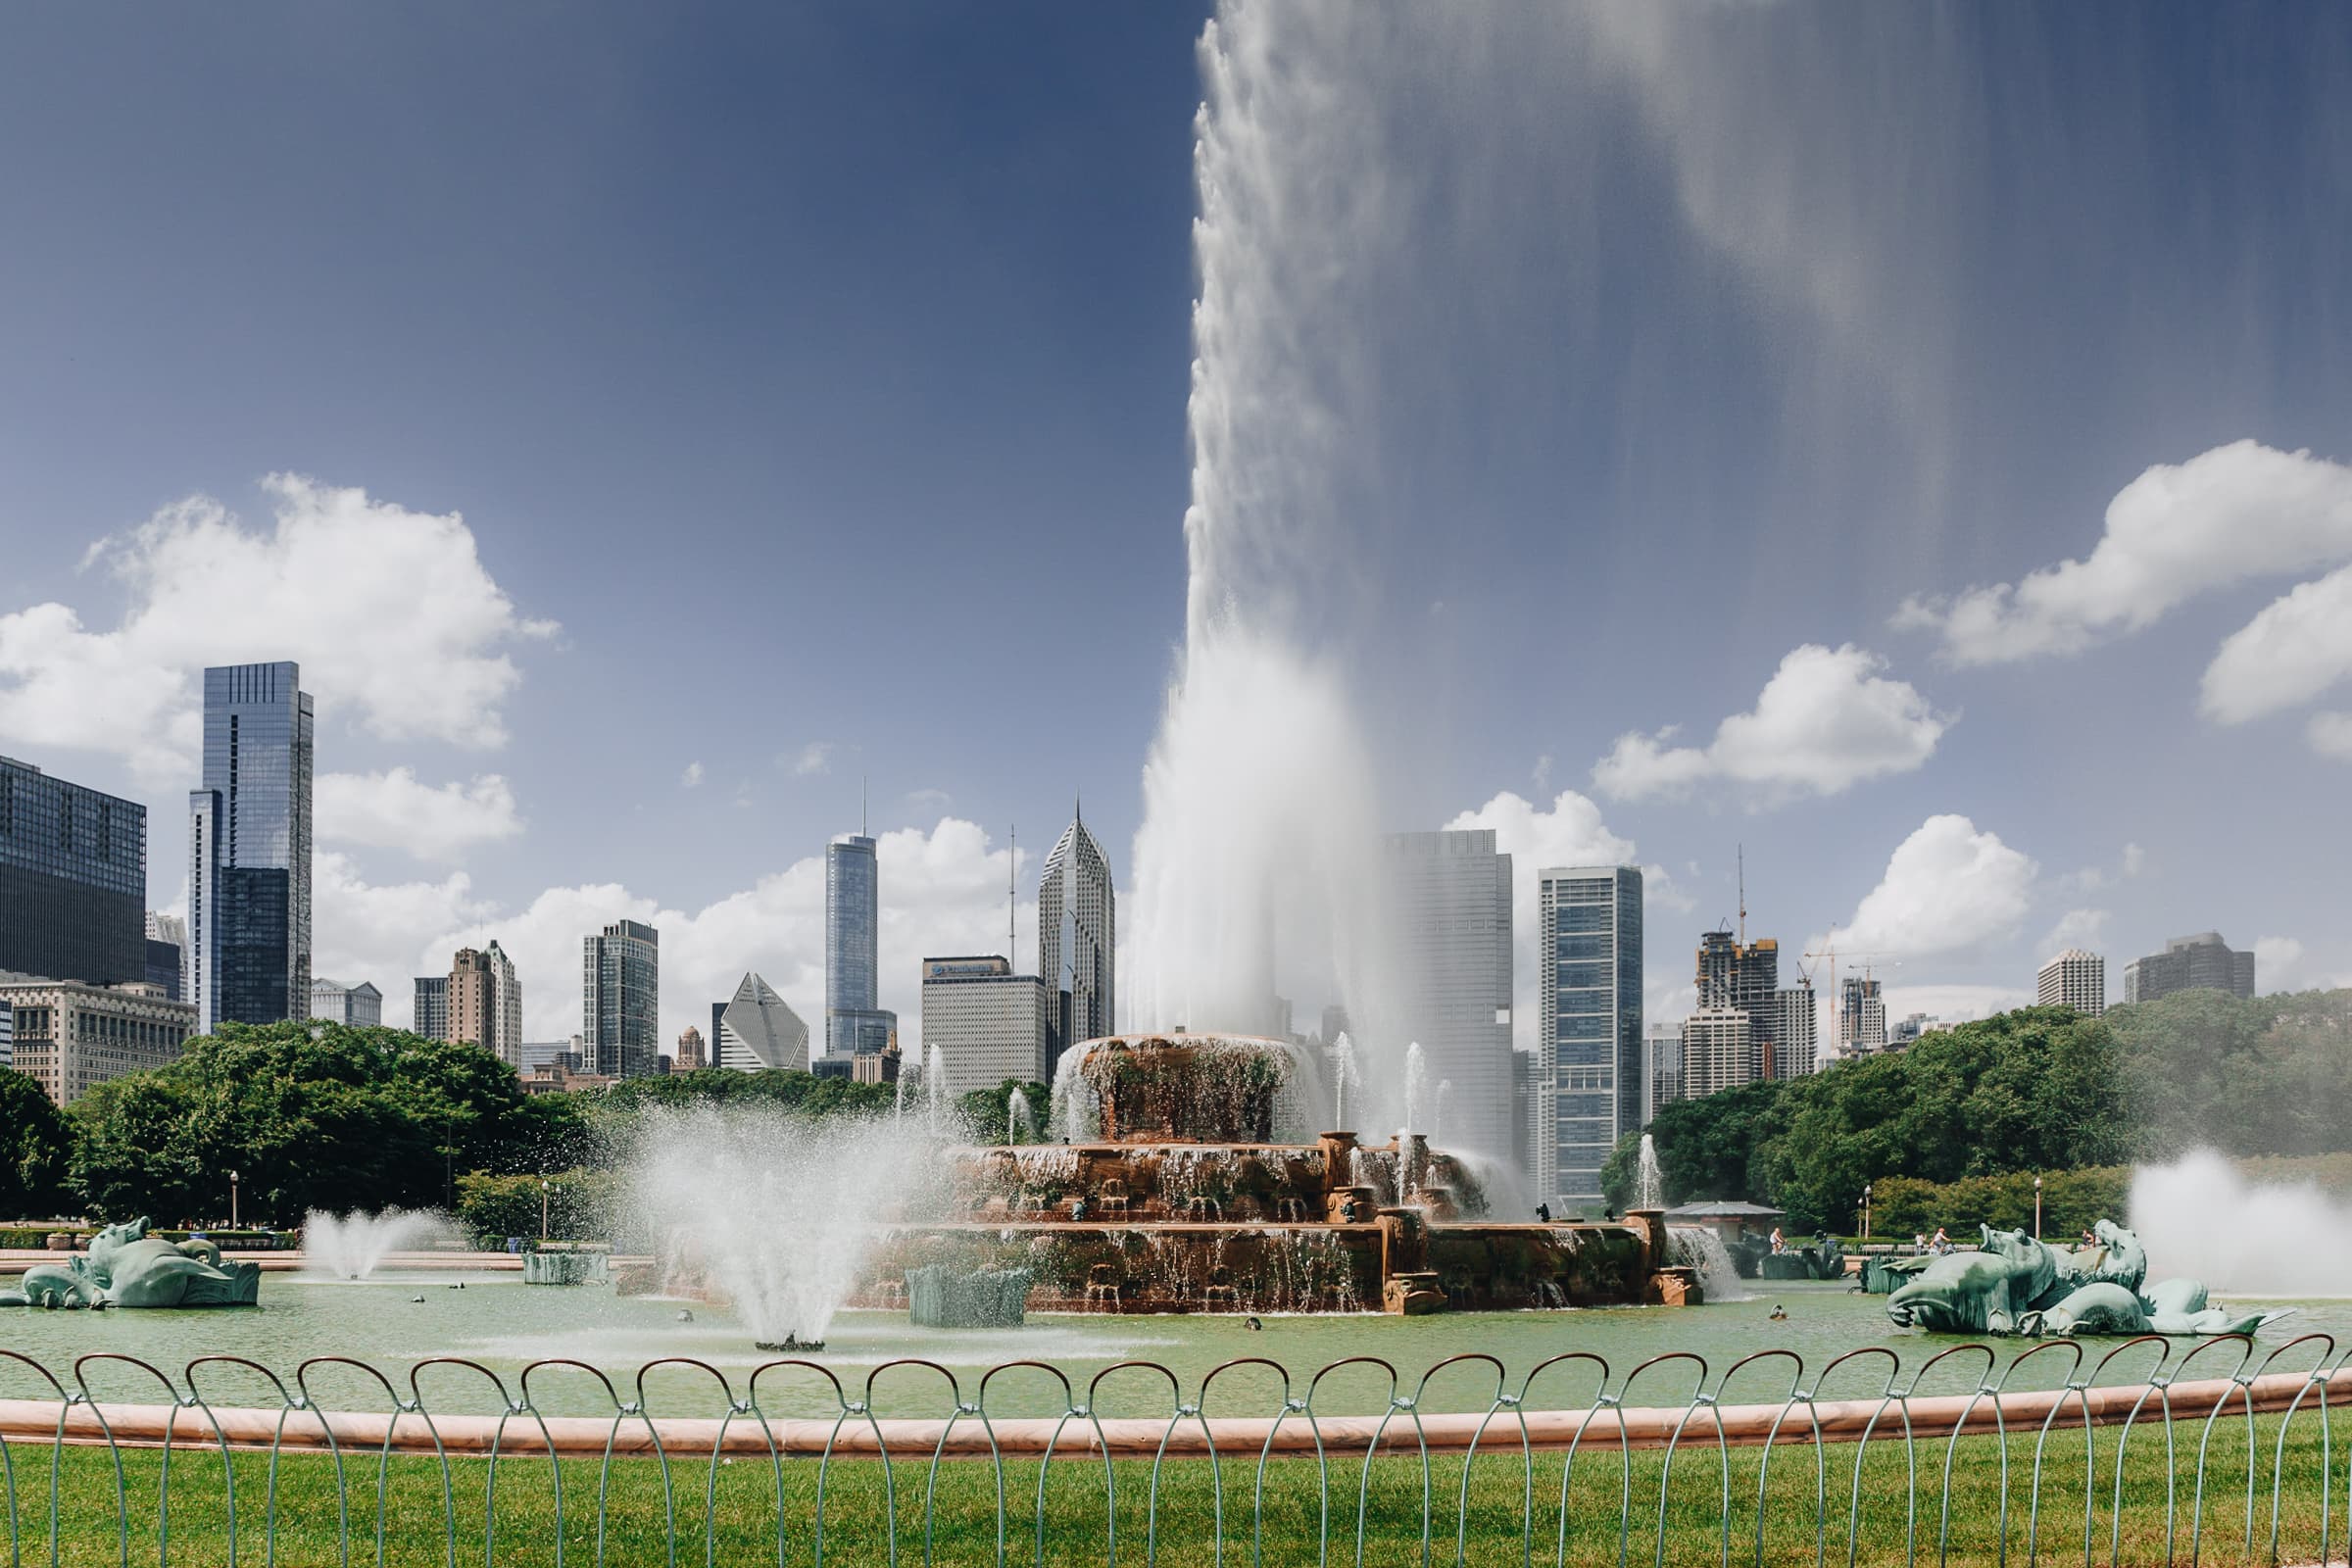 Chicago landmarks Buckingham Fountain fountain Al Bundy A terribly nice family